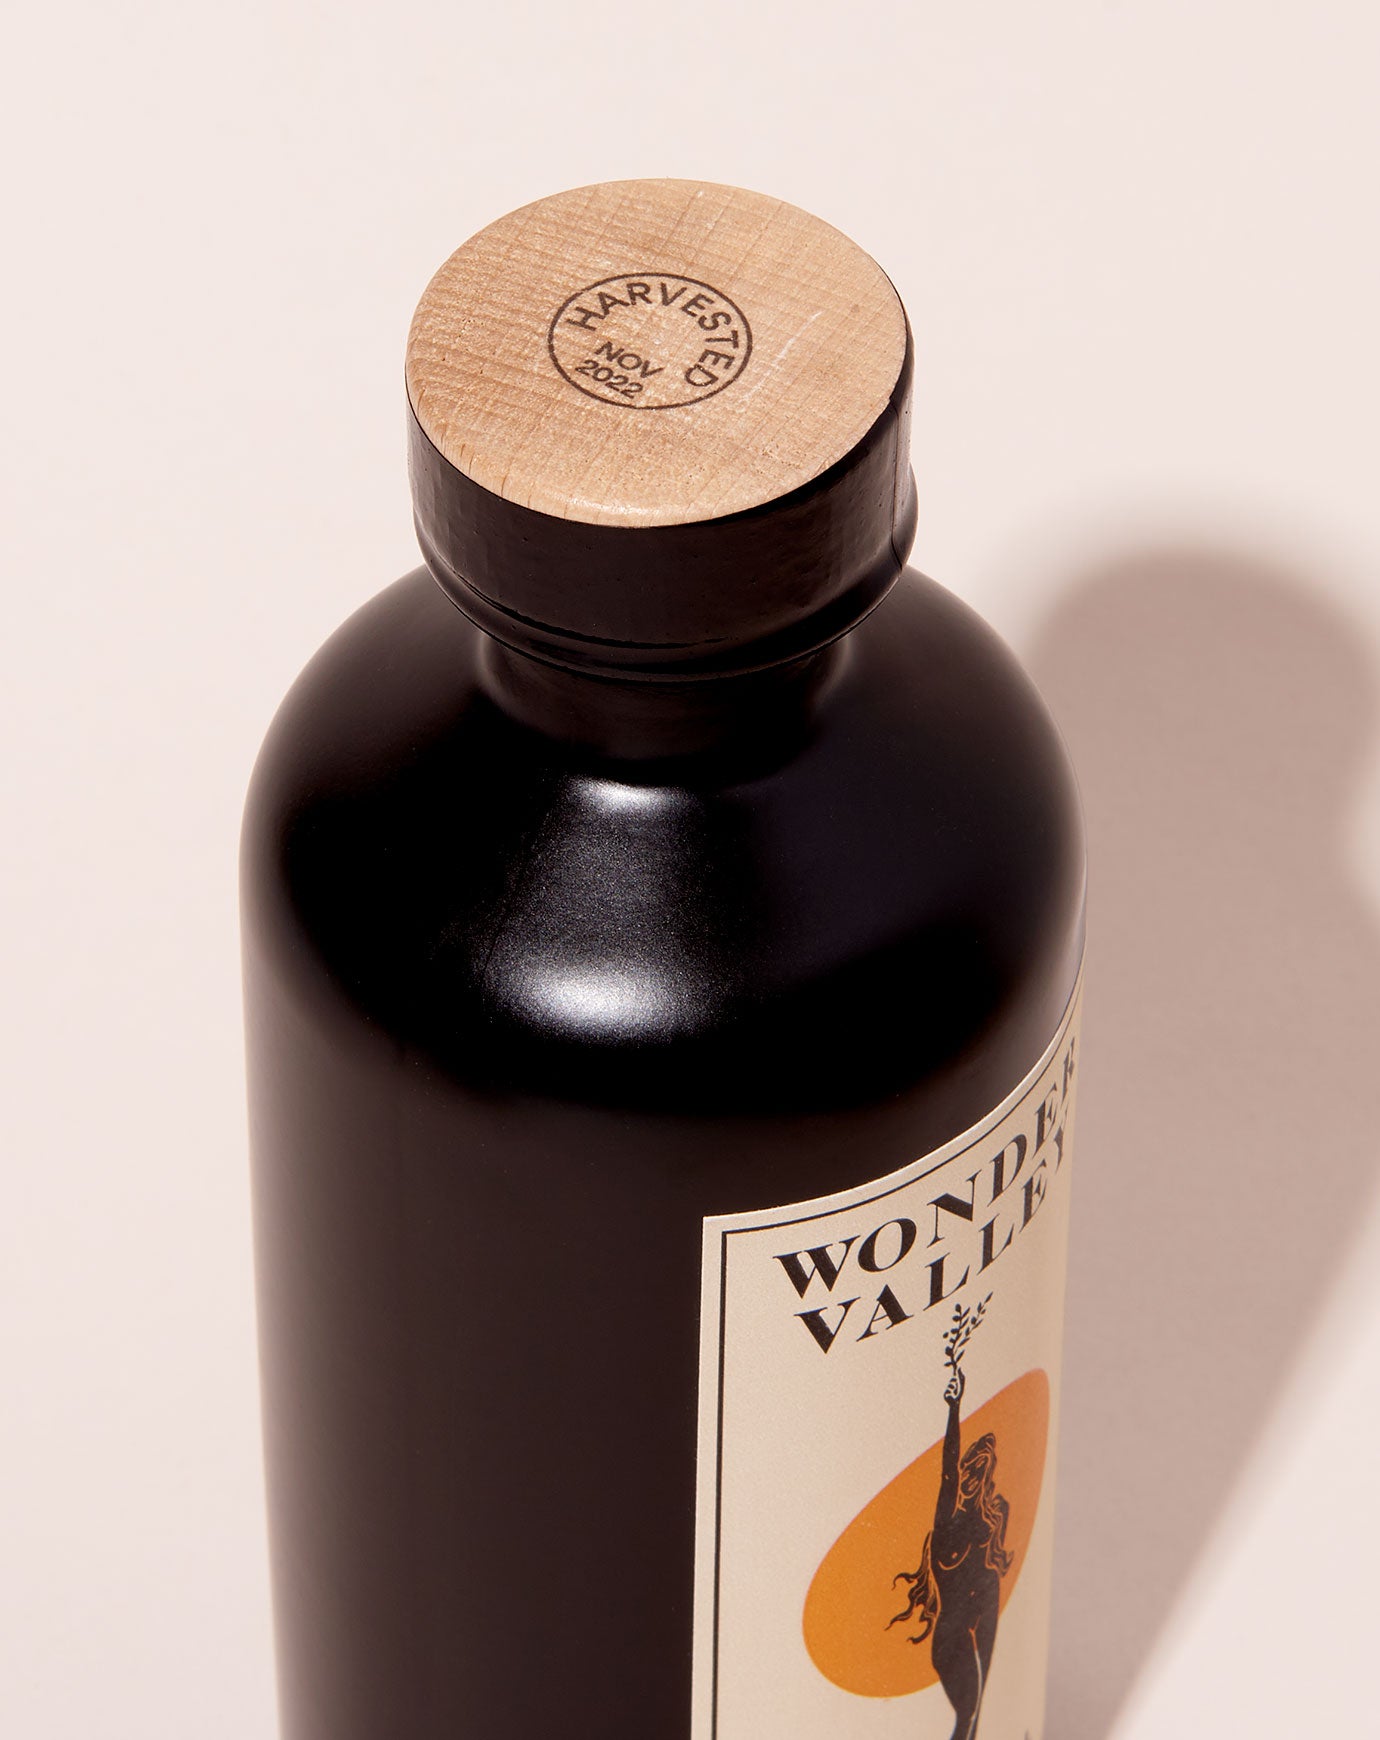 Wonder Valley Olive Oil